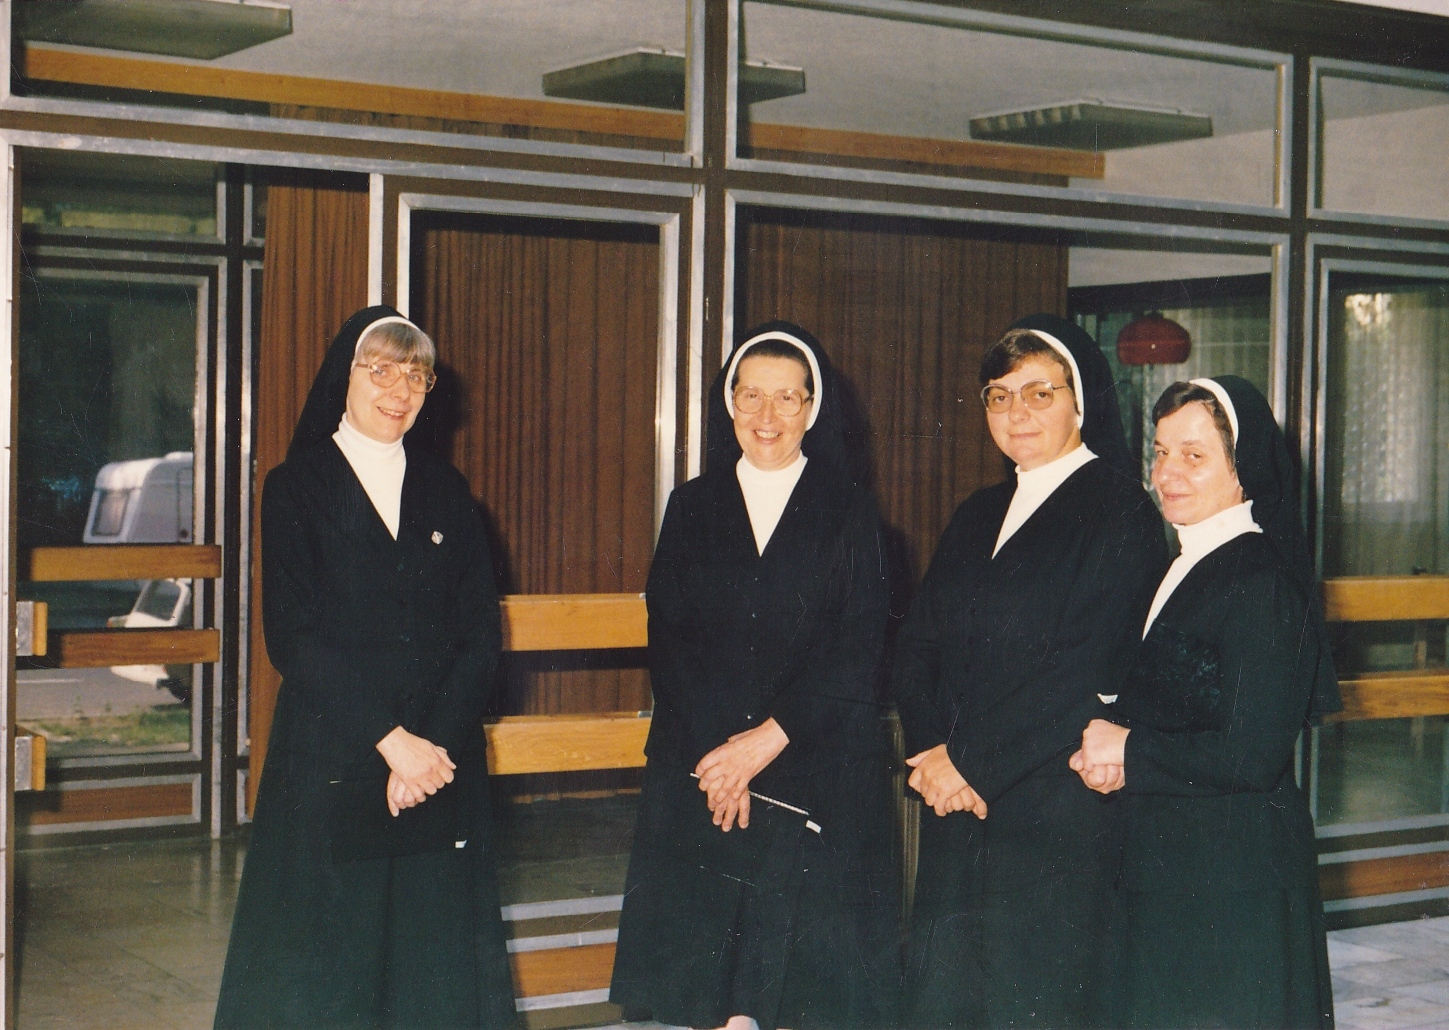 Tartományi tanácsosként (balról: Maros M. Ladiszla, Szobonya M. Jolánta tartományfőnöknő, Pekó M. Adrien, Fodor M. Ágnes)